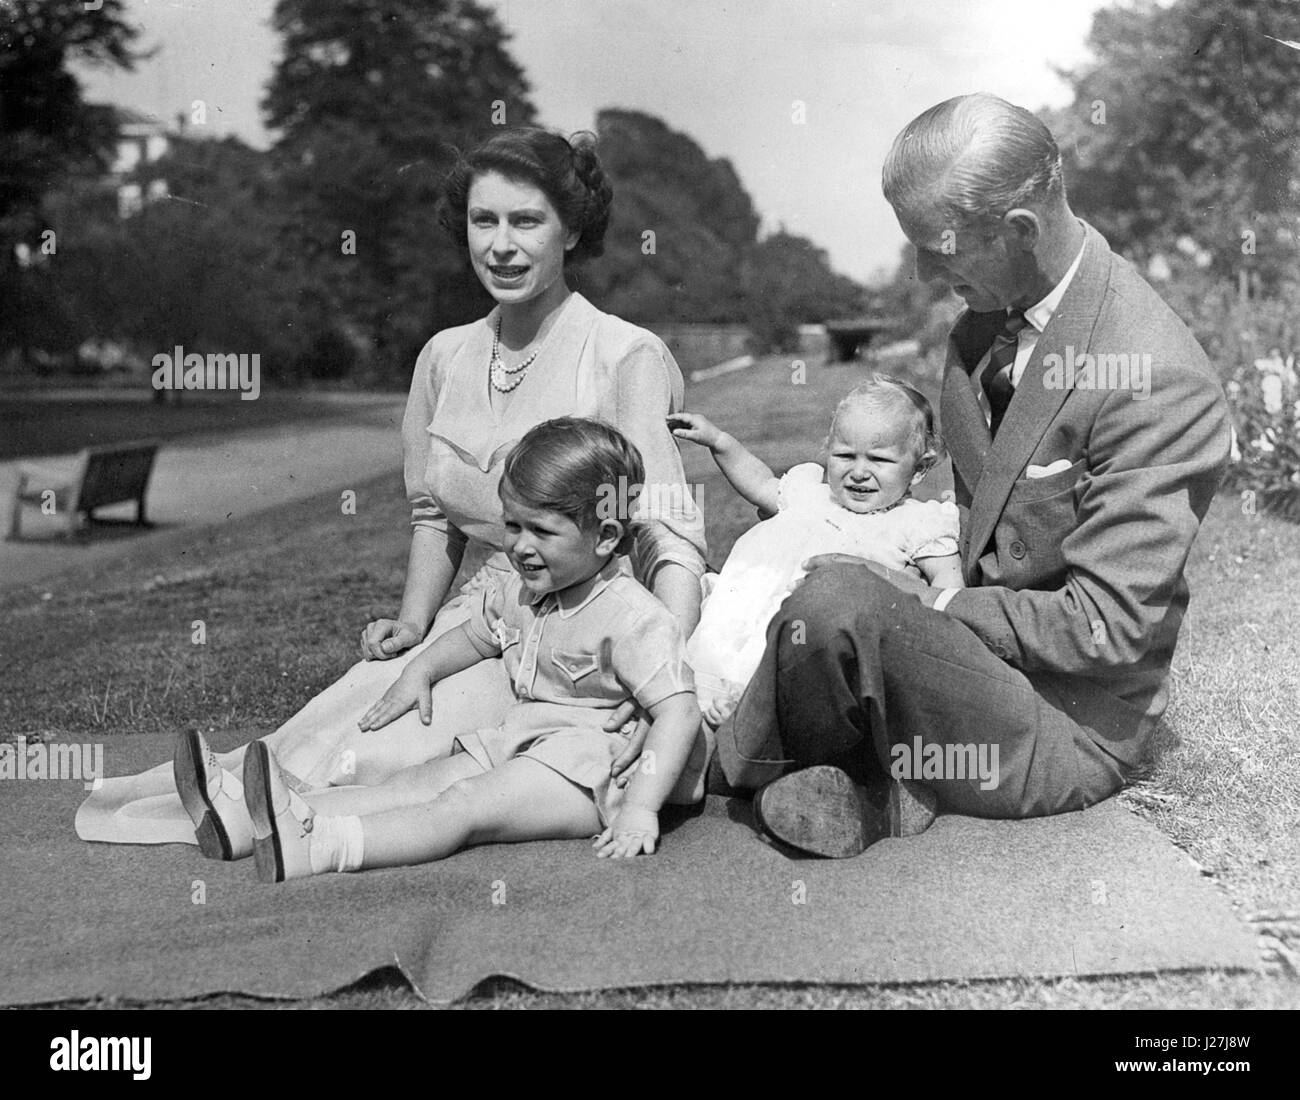 2. Februar 1952 - is The King Dead. Die neue Königin und ihre Familie im Clanrence House (1951).: der Tod, der König war in seine Schafe in Sandringham in der Nacht starb, H.M angekündigt wurde. Prinzessin Elizabeth, der jetzt in Kenia mit ihrem Ehemann Prinz Philip gelingt es, auf den Thron und der Herzog wird ihr Prinzgemahl. Baby-Prinz Charles wird ist in direkter Folge - und wahrscheinlich Prince Of Wales. Die neue Königin wird voraussichtlich fast sofort zurück nach London fliegen. Der König, der in 56 den Thron an der Abdankung seines Bruders Herzog von Windsor (Könige Edward bestieg Stockfoto